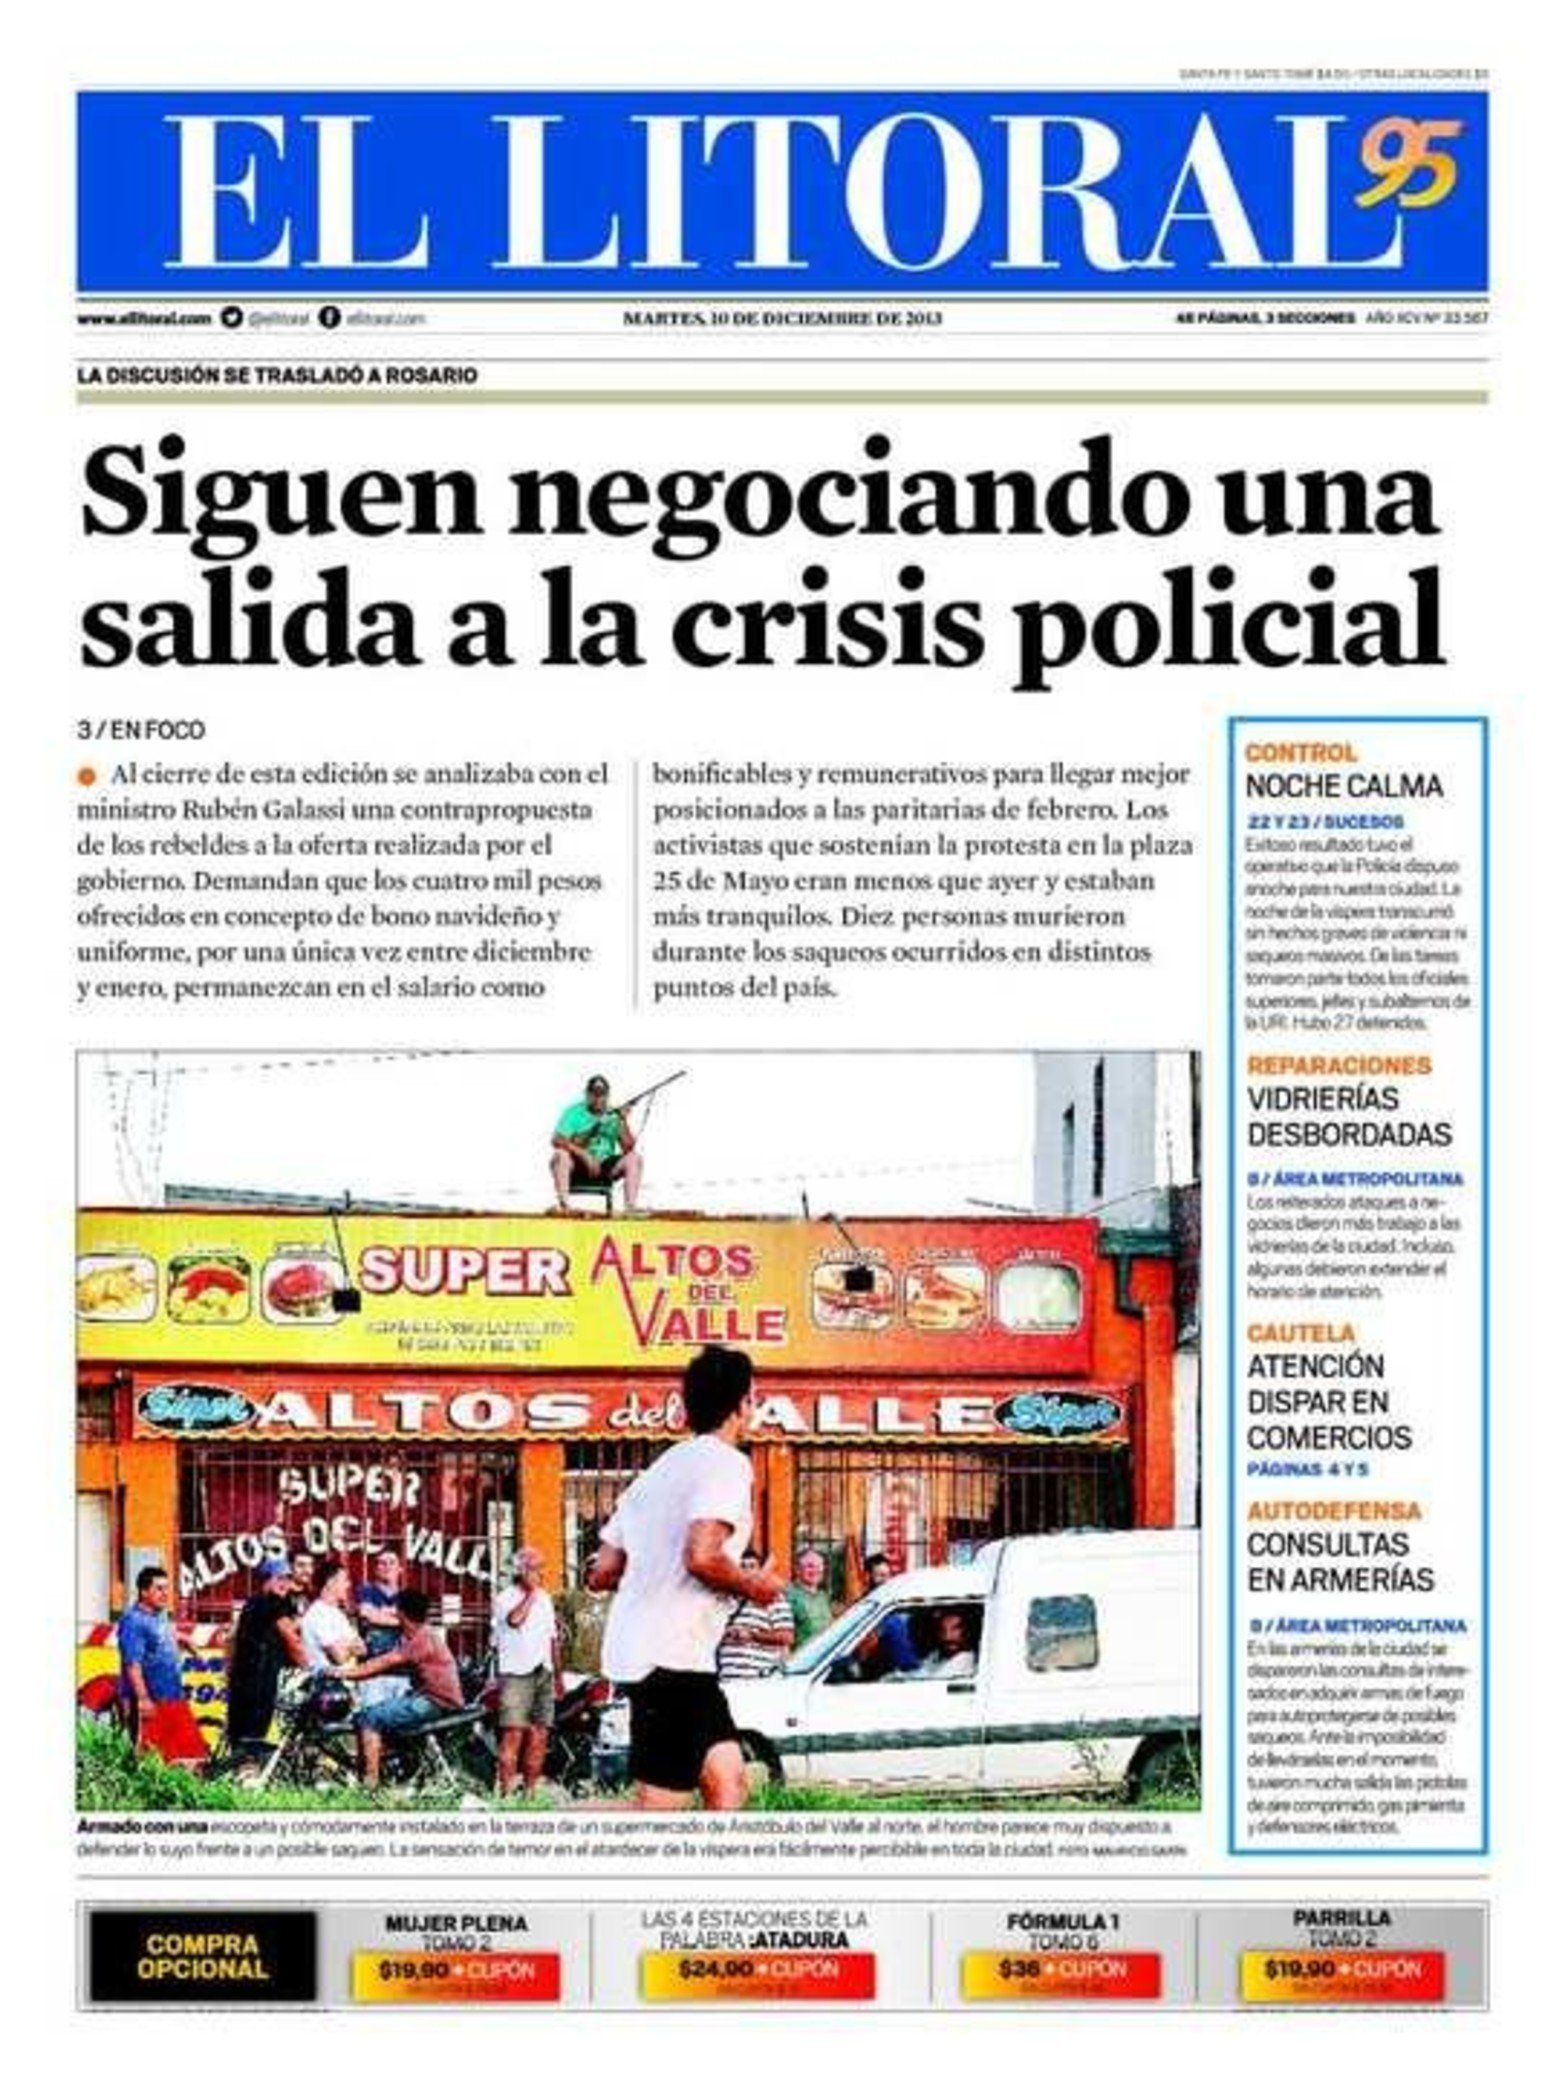 El martes 10 de diciembre de 2013, la tapa de diario El Litoral.